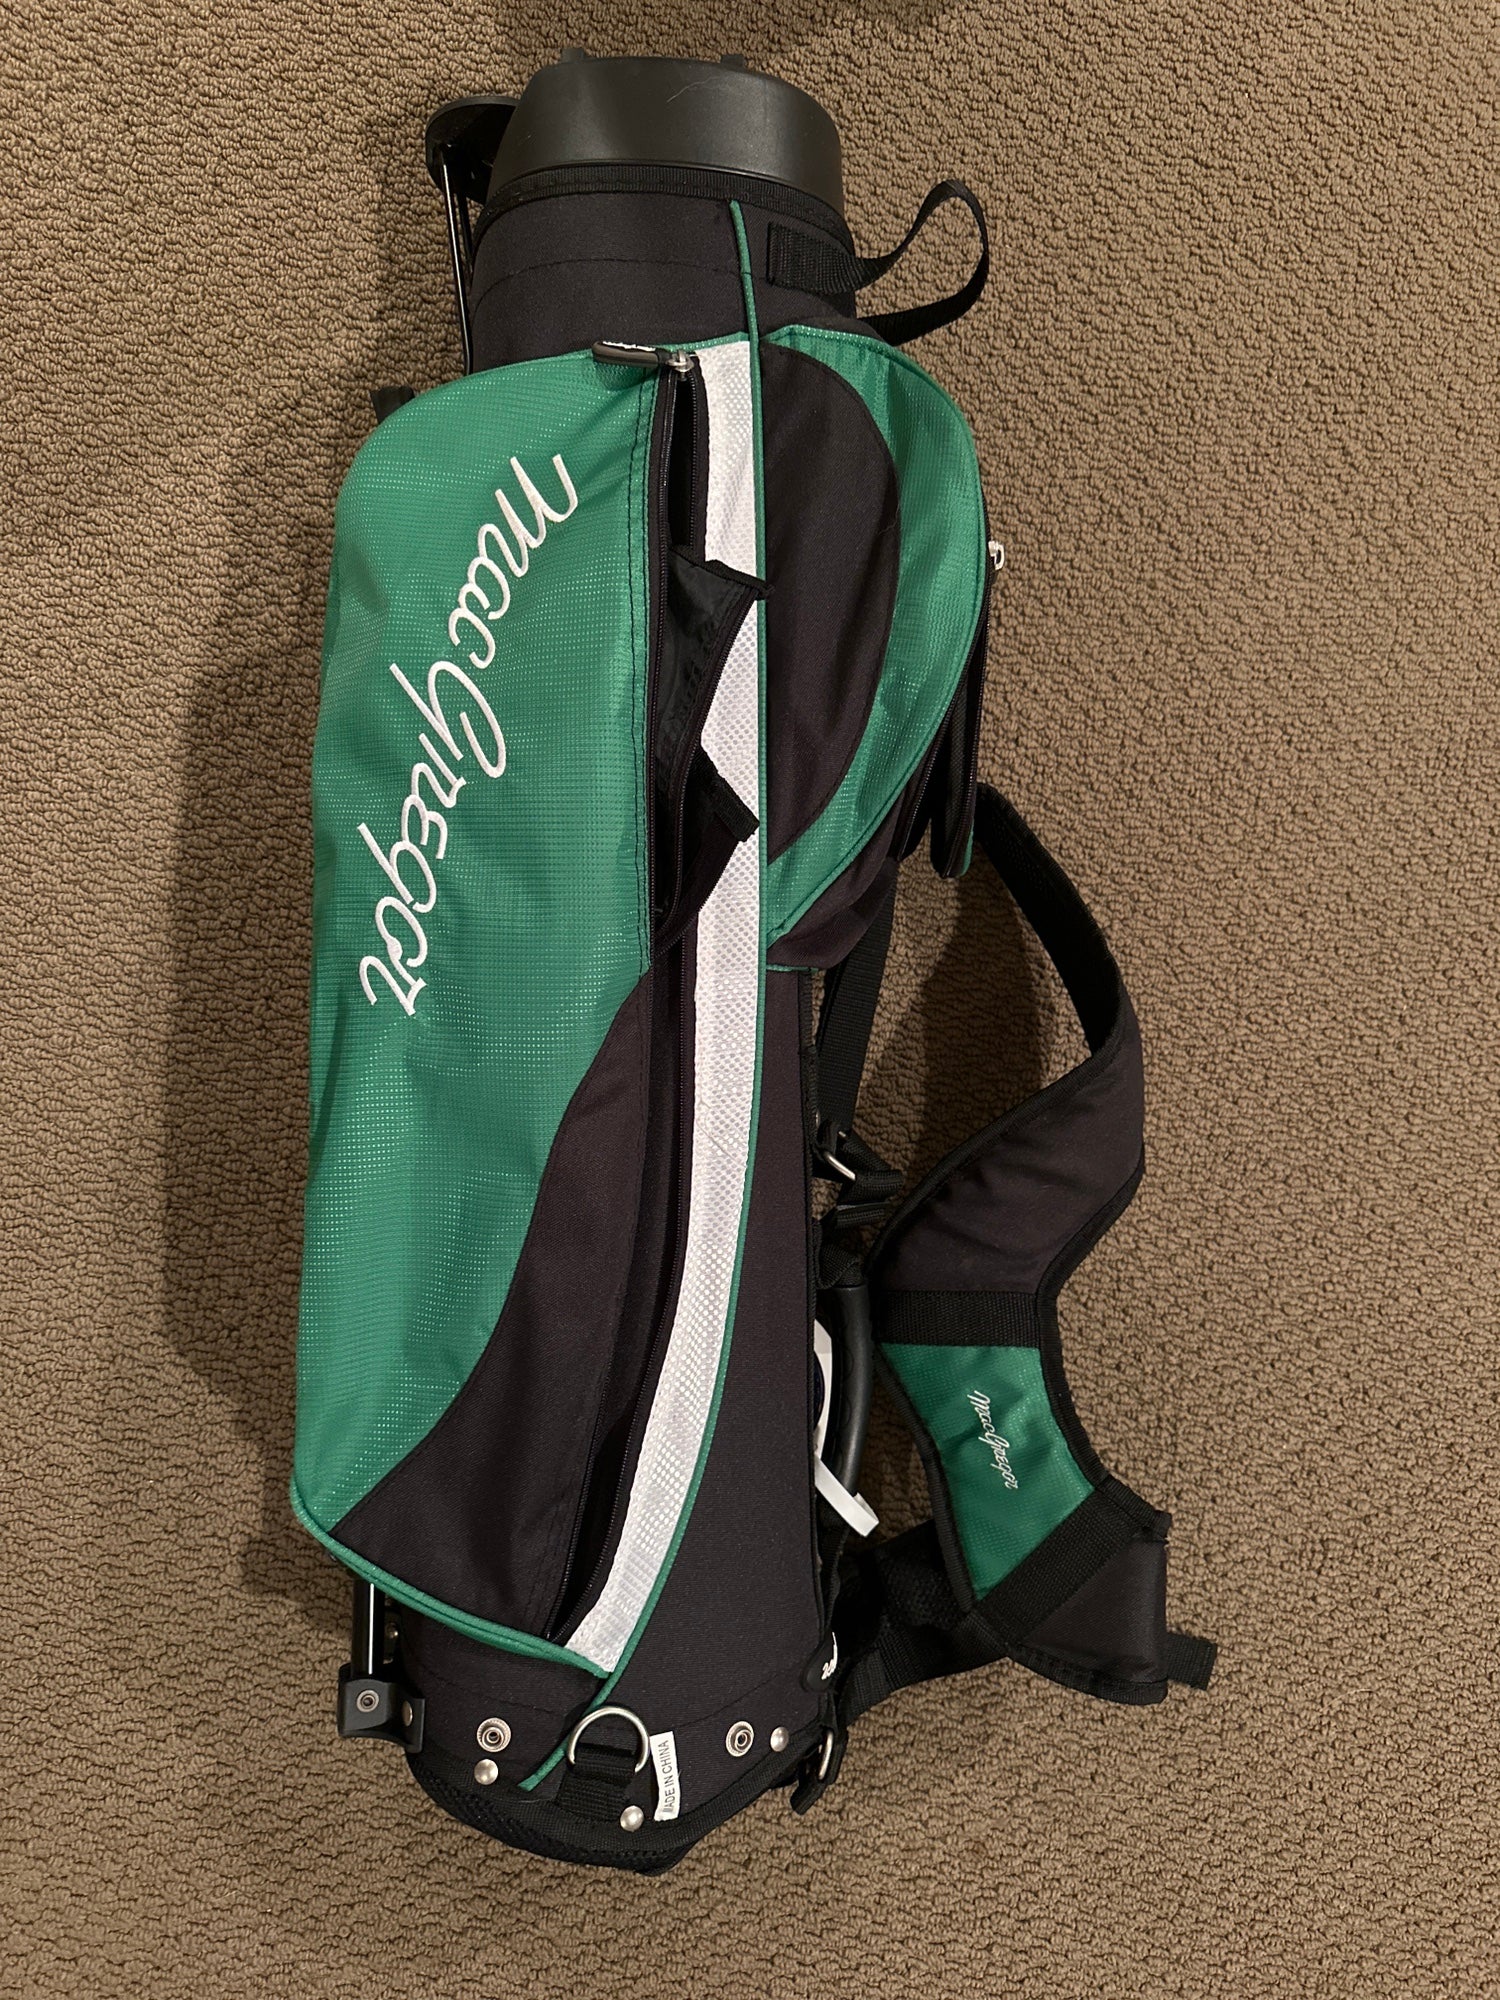 MacGregor Golf Bags